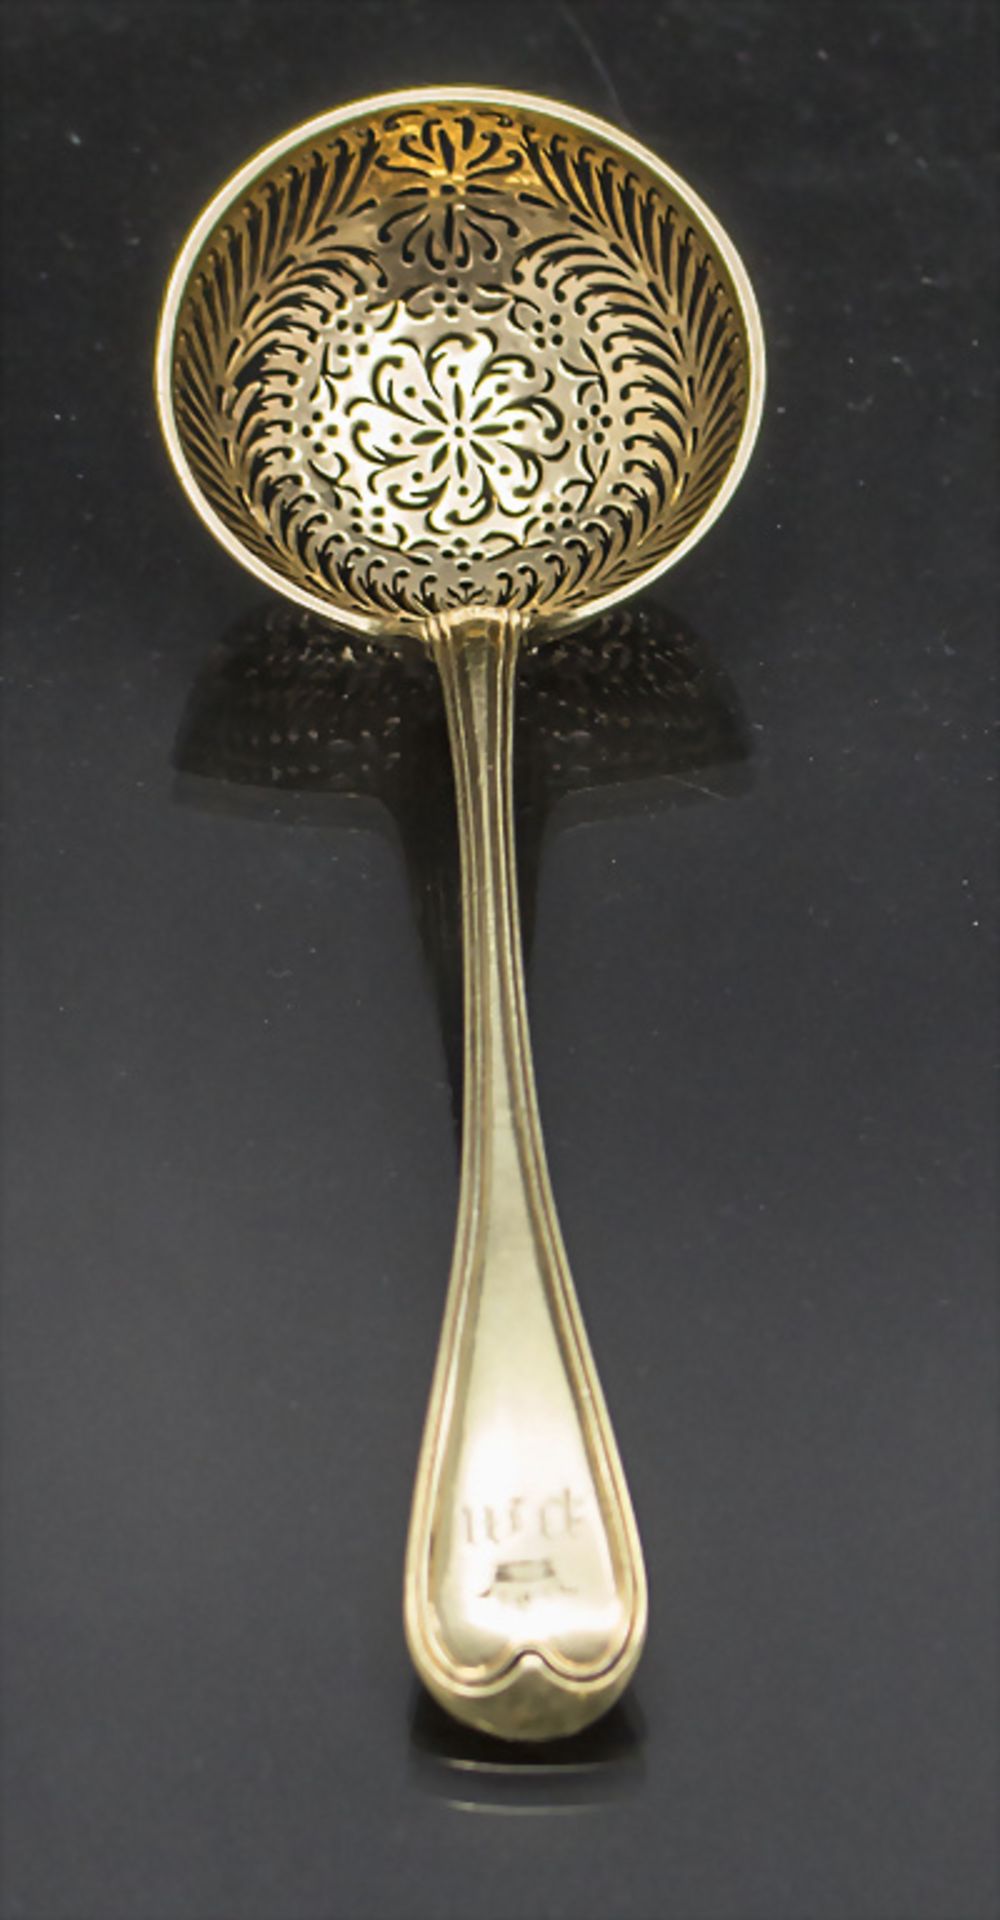 Zuckerstreuer / A silver sugar sifter spoon, Jacques-Jérémie Hubert, Paris, 1809-1819